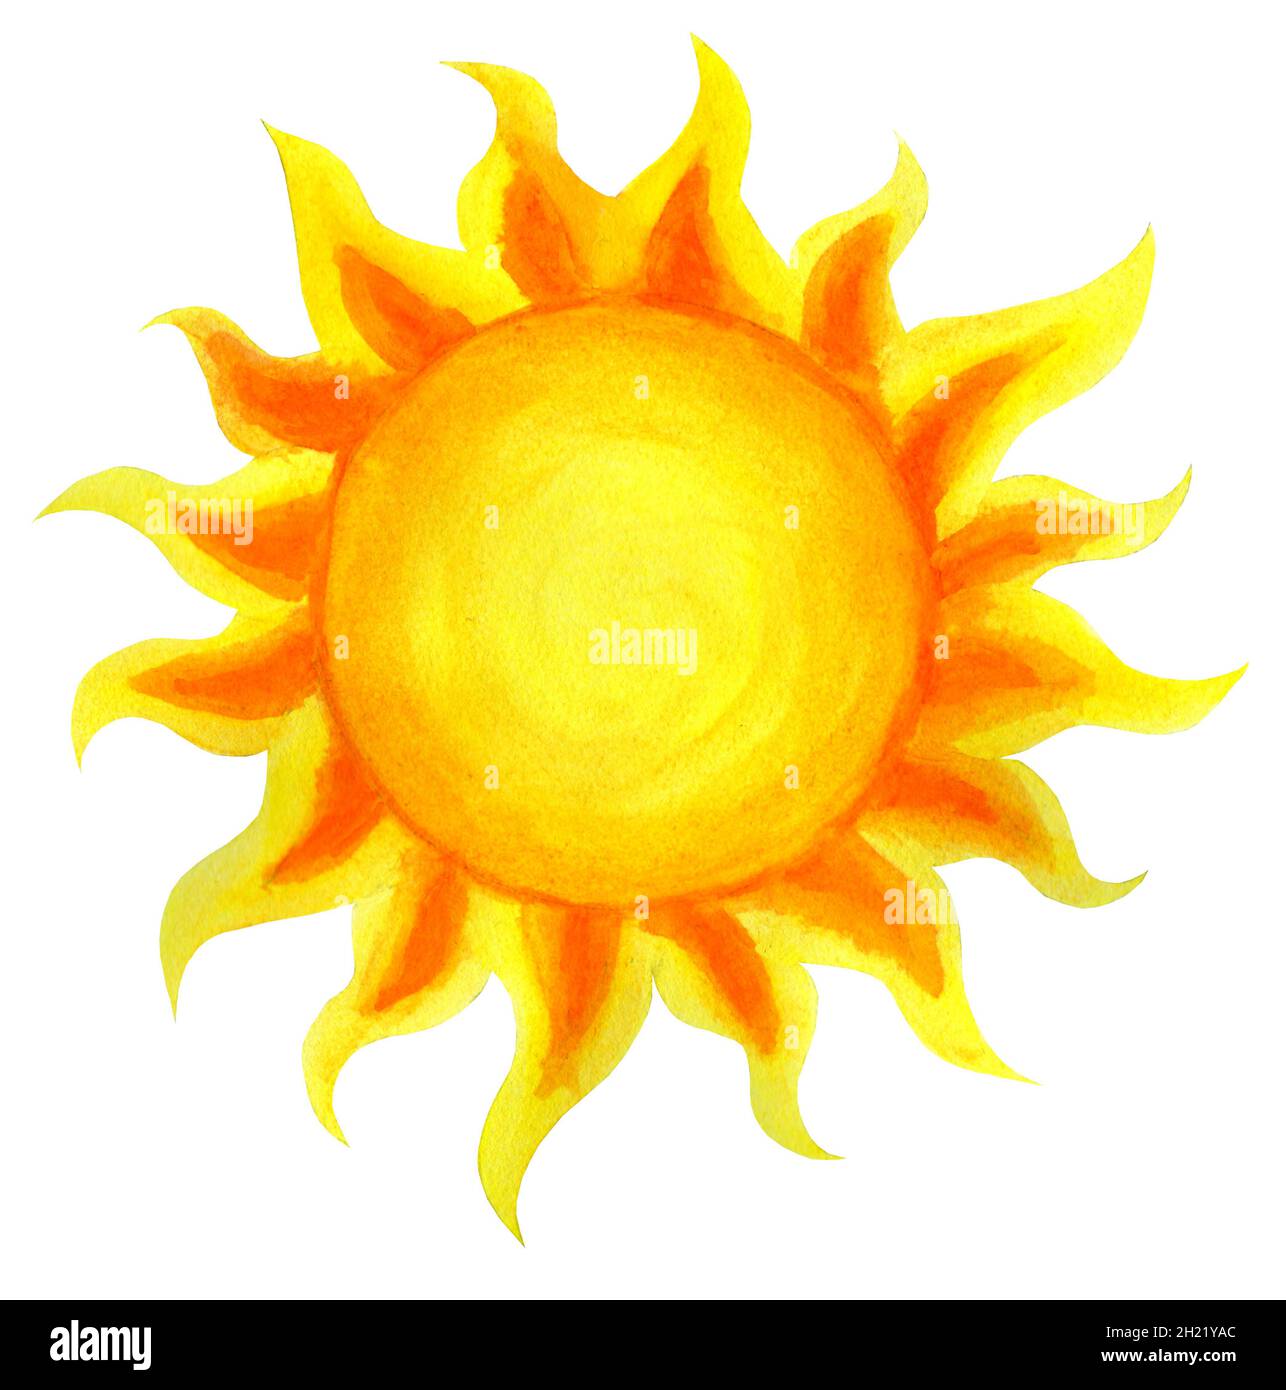 Acuarela de dibujos animados del sol. Ilustración infantil del sol dibujado  a mano. Aislado sobre fondo blanco. Puesta de sol al amanecer Fotografía de  stock - Alamy